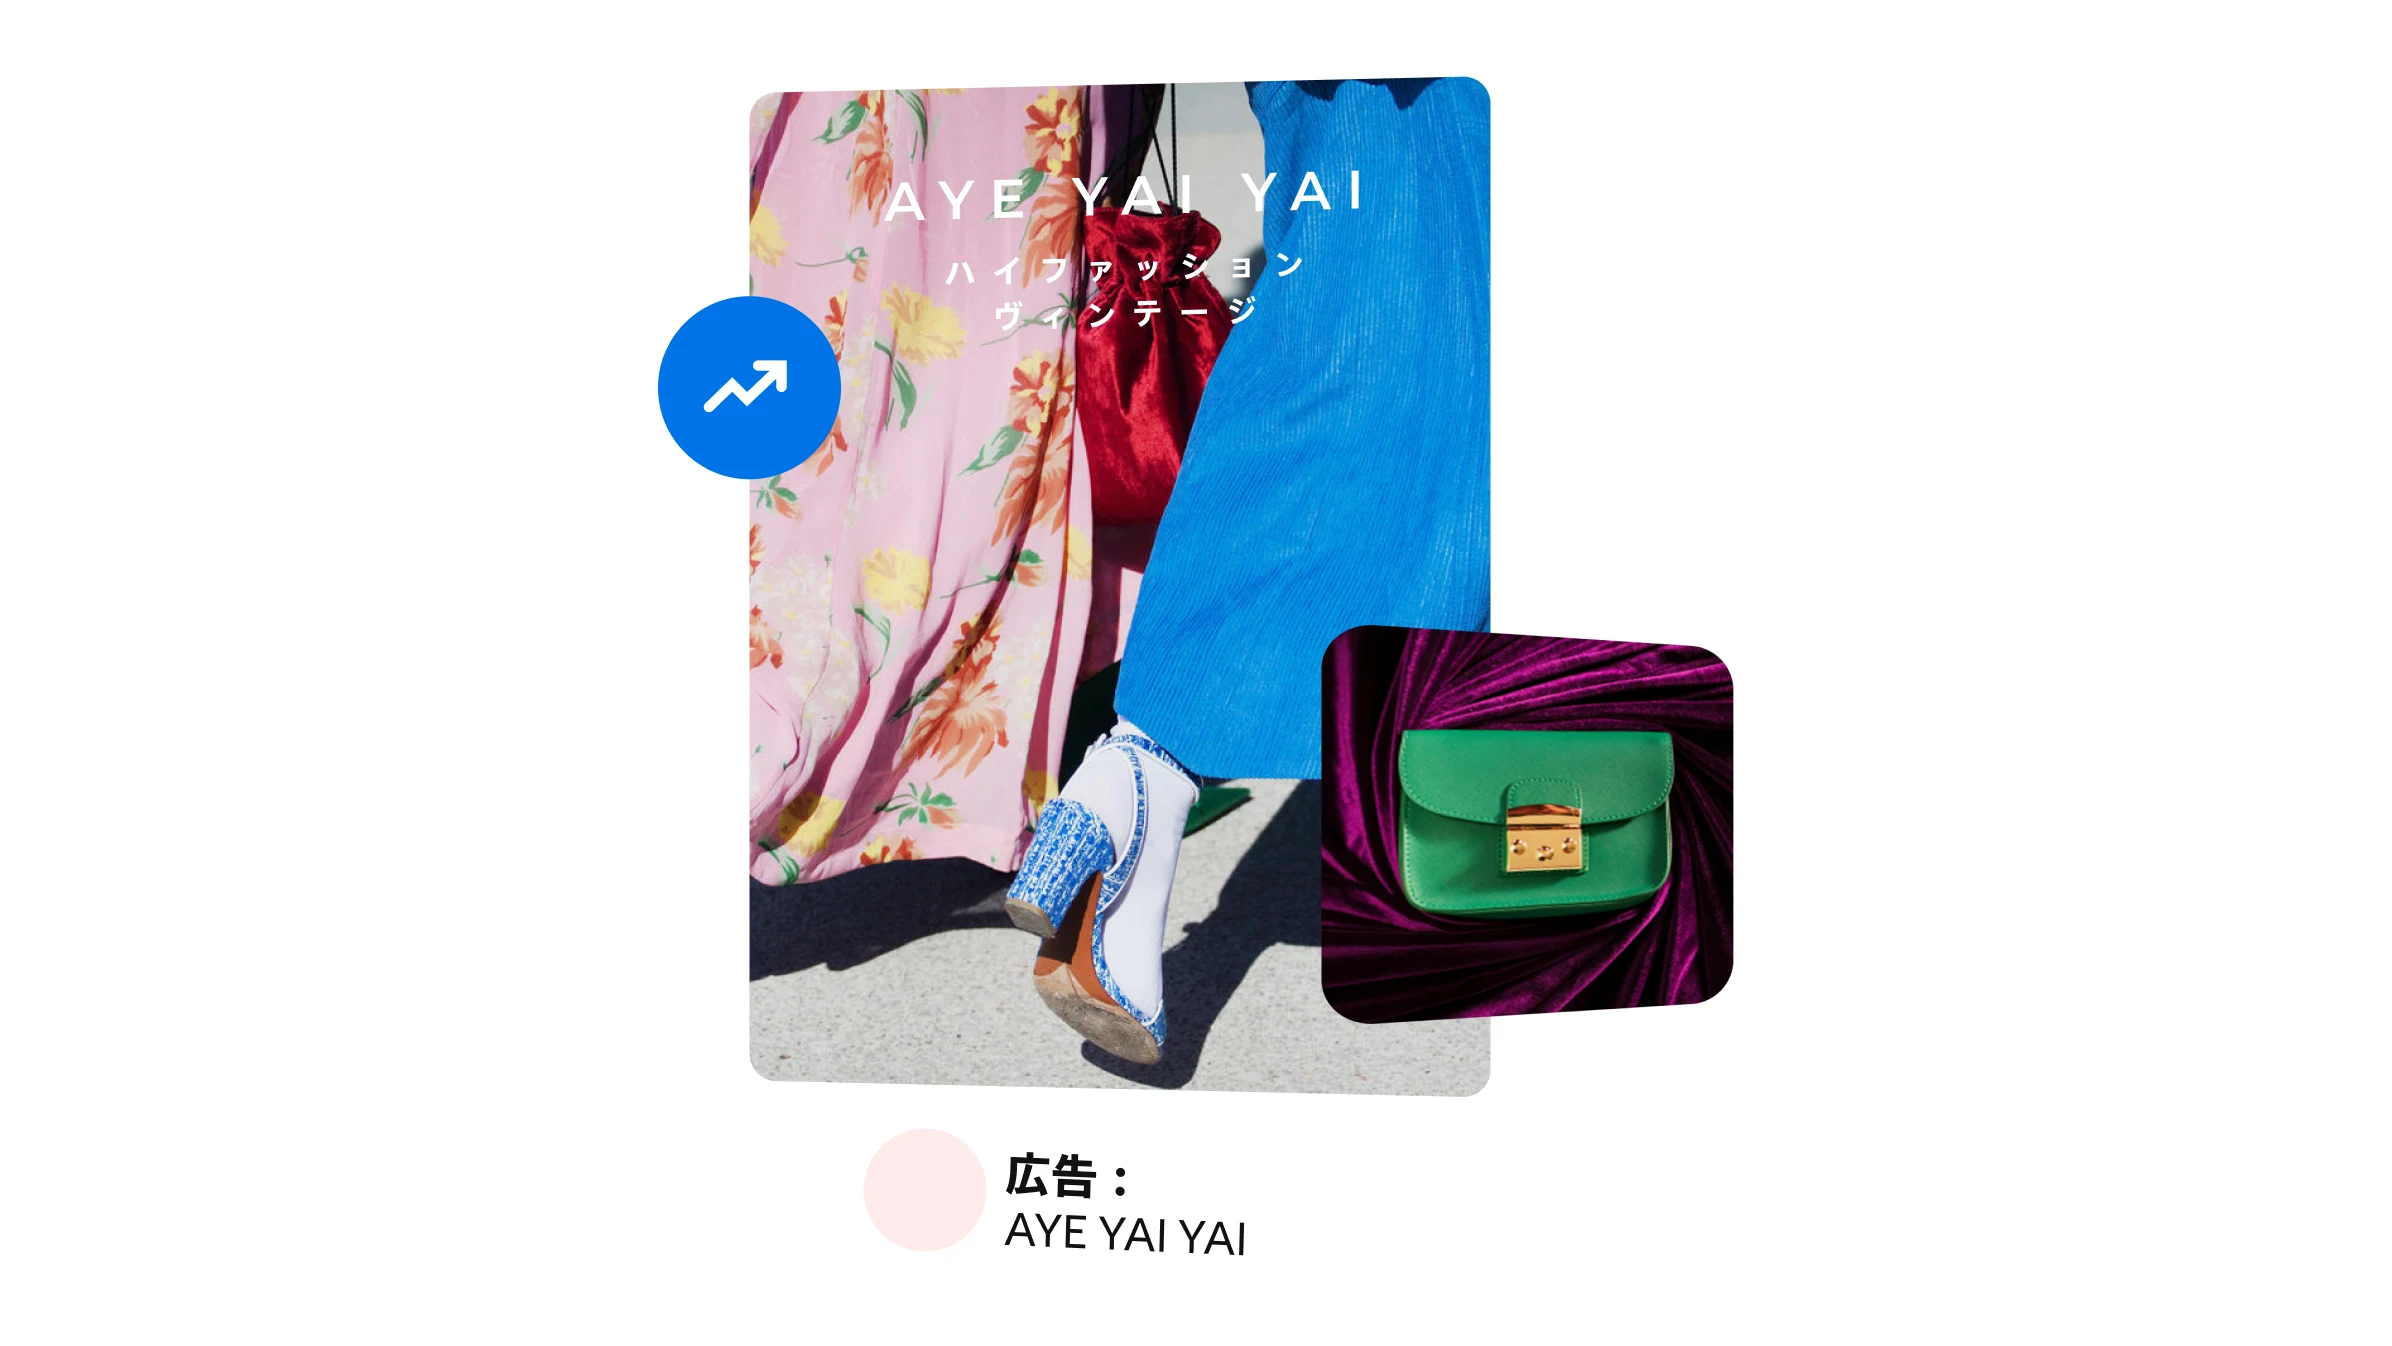 グリーンのミニバッグを紹介する AYE YAI YAI のファッション広告。